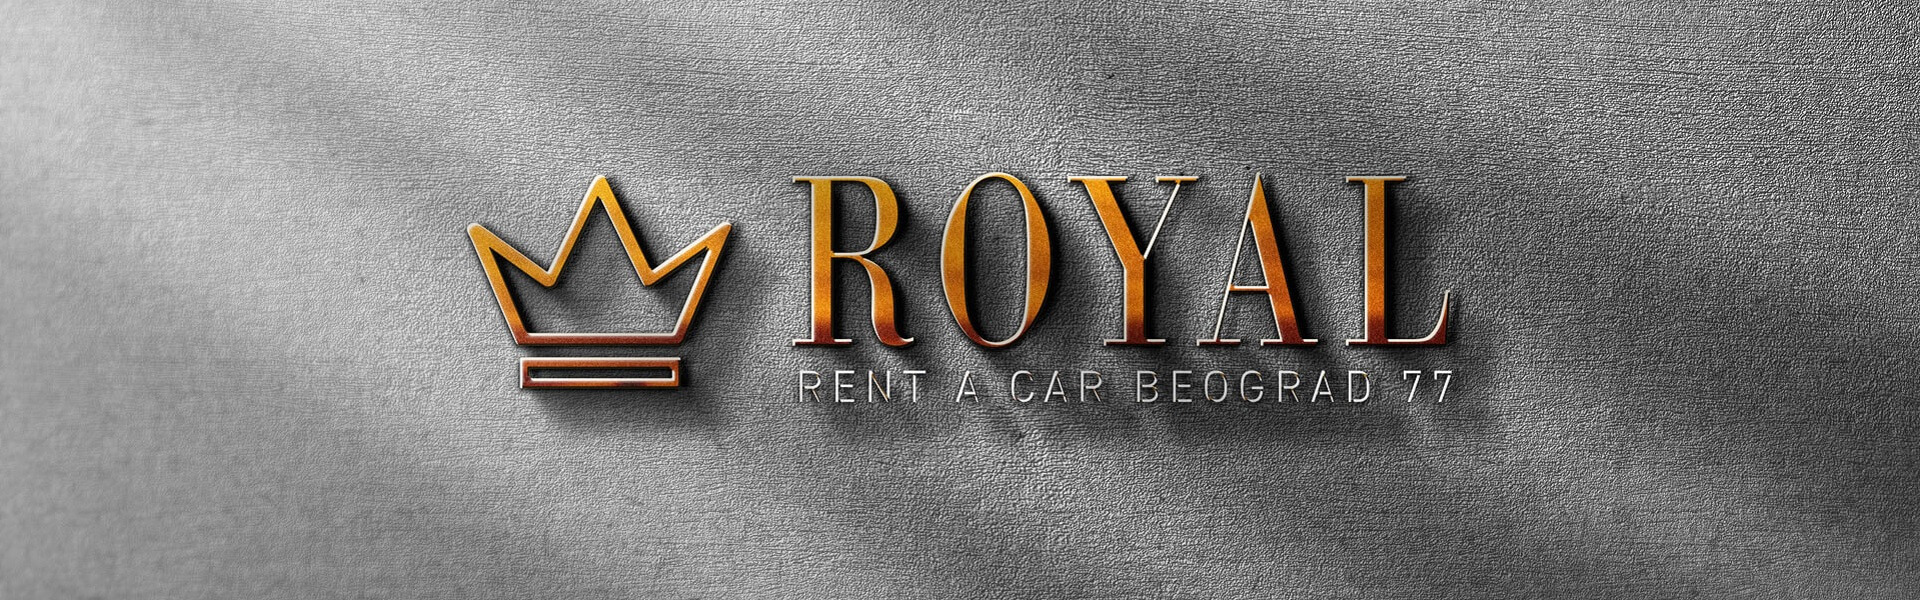 Car Rental Riyadh | Rent a Car Beograd